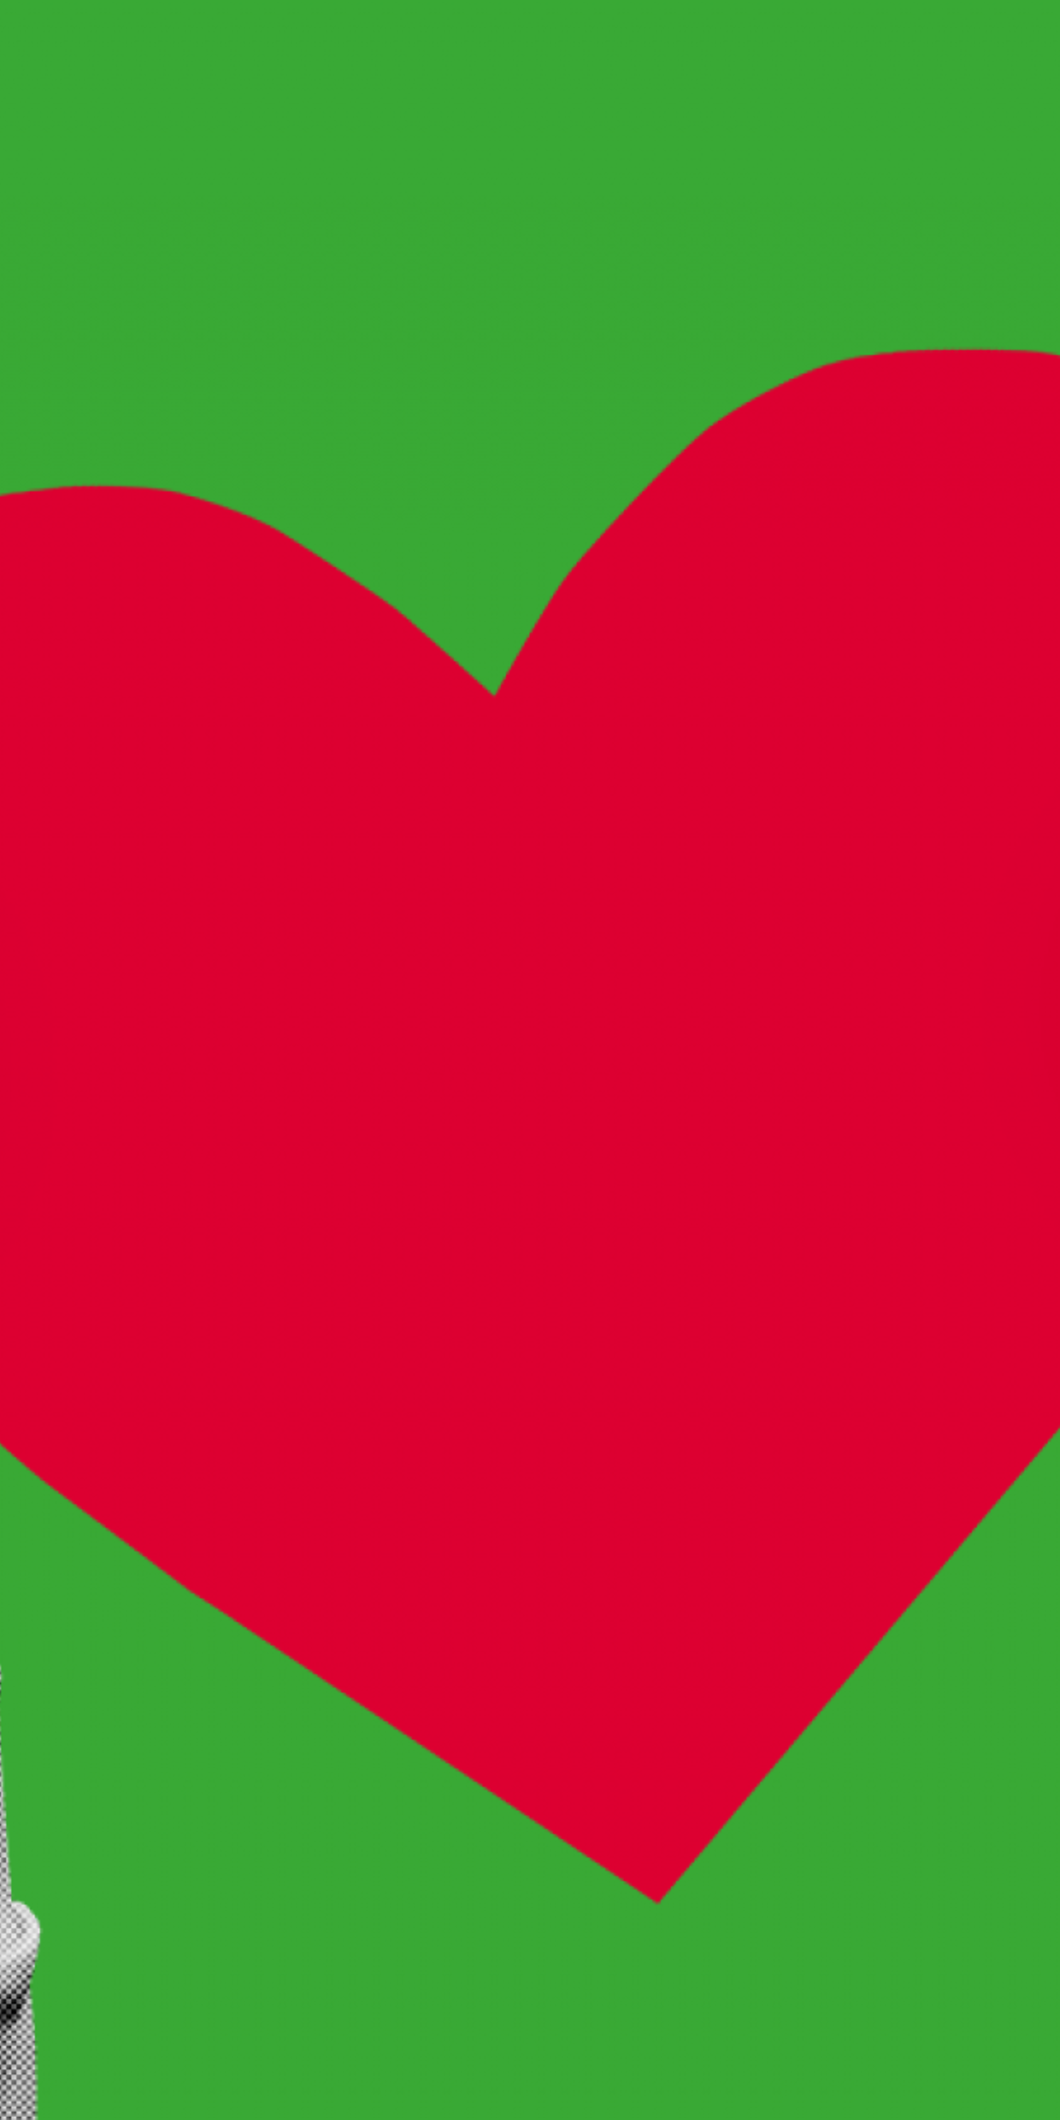 Groene achtergrond met twee handen die een rood hart omhoog houden